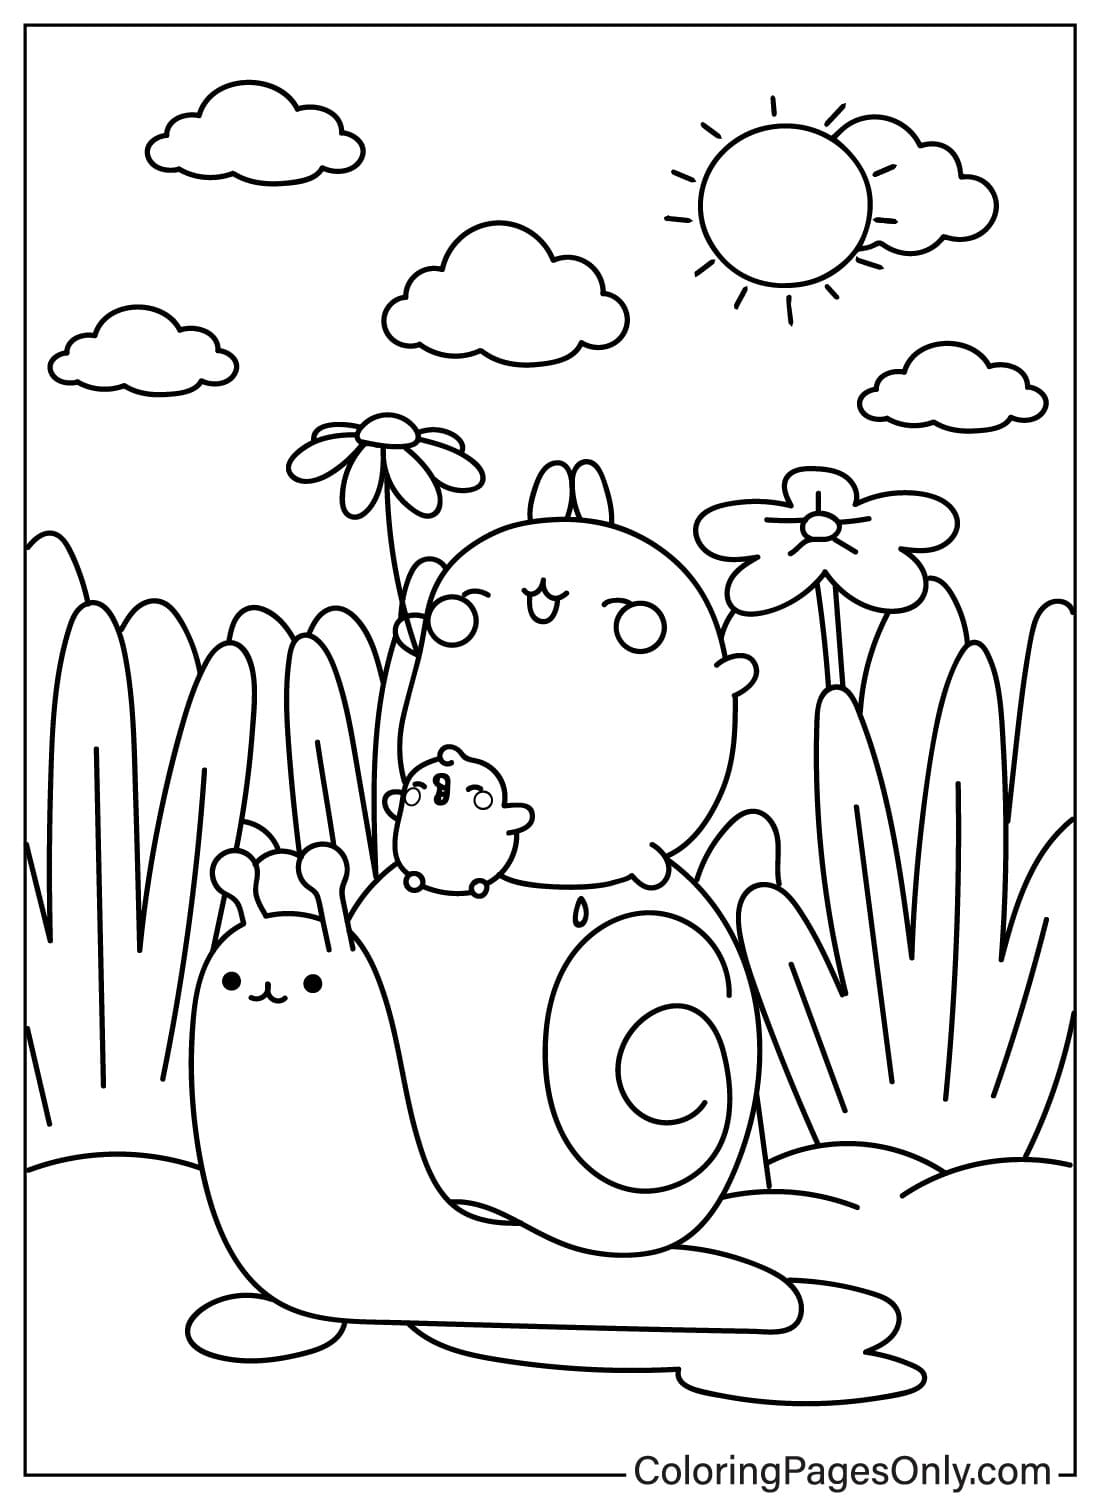 Molang Riding a Snail Coloring Sheet from Molang